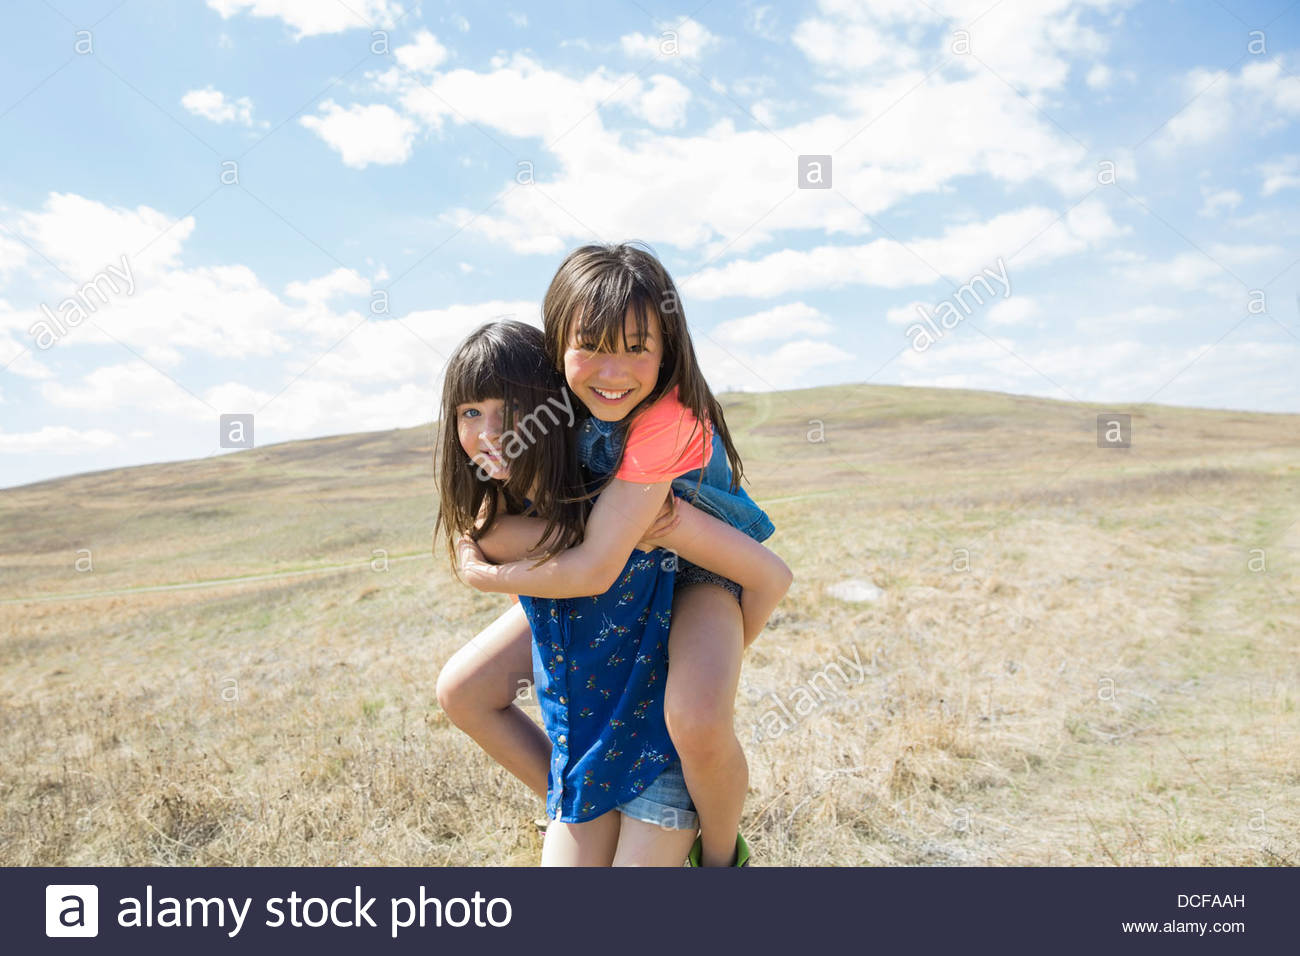 Little girl piggybacking female friend Stock Photo